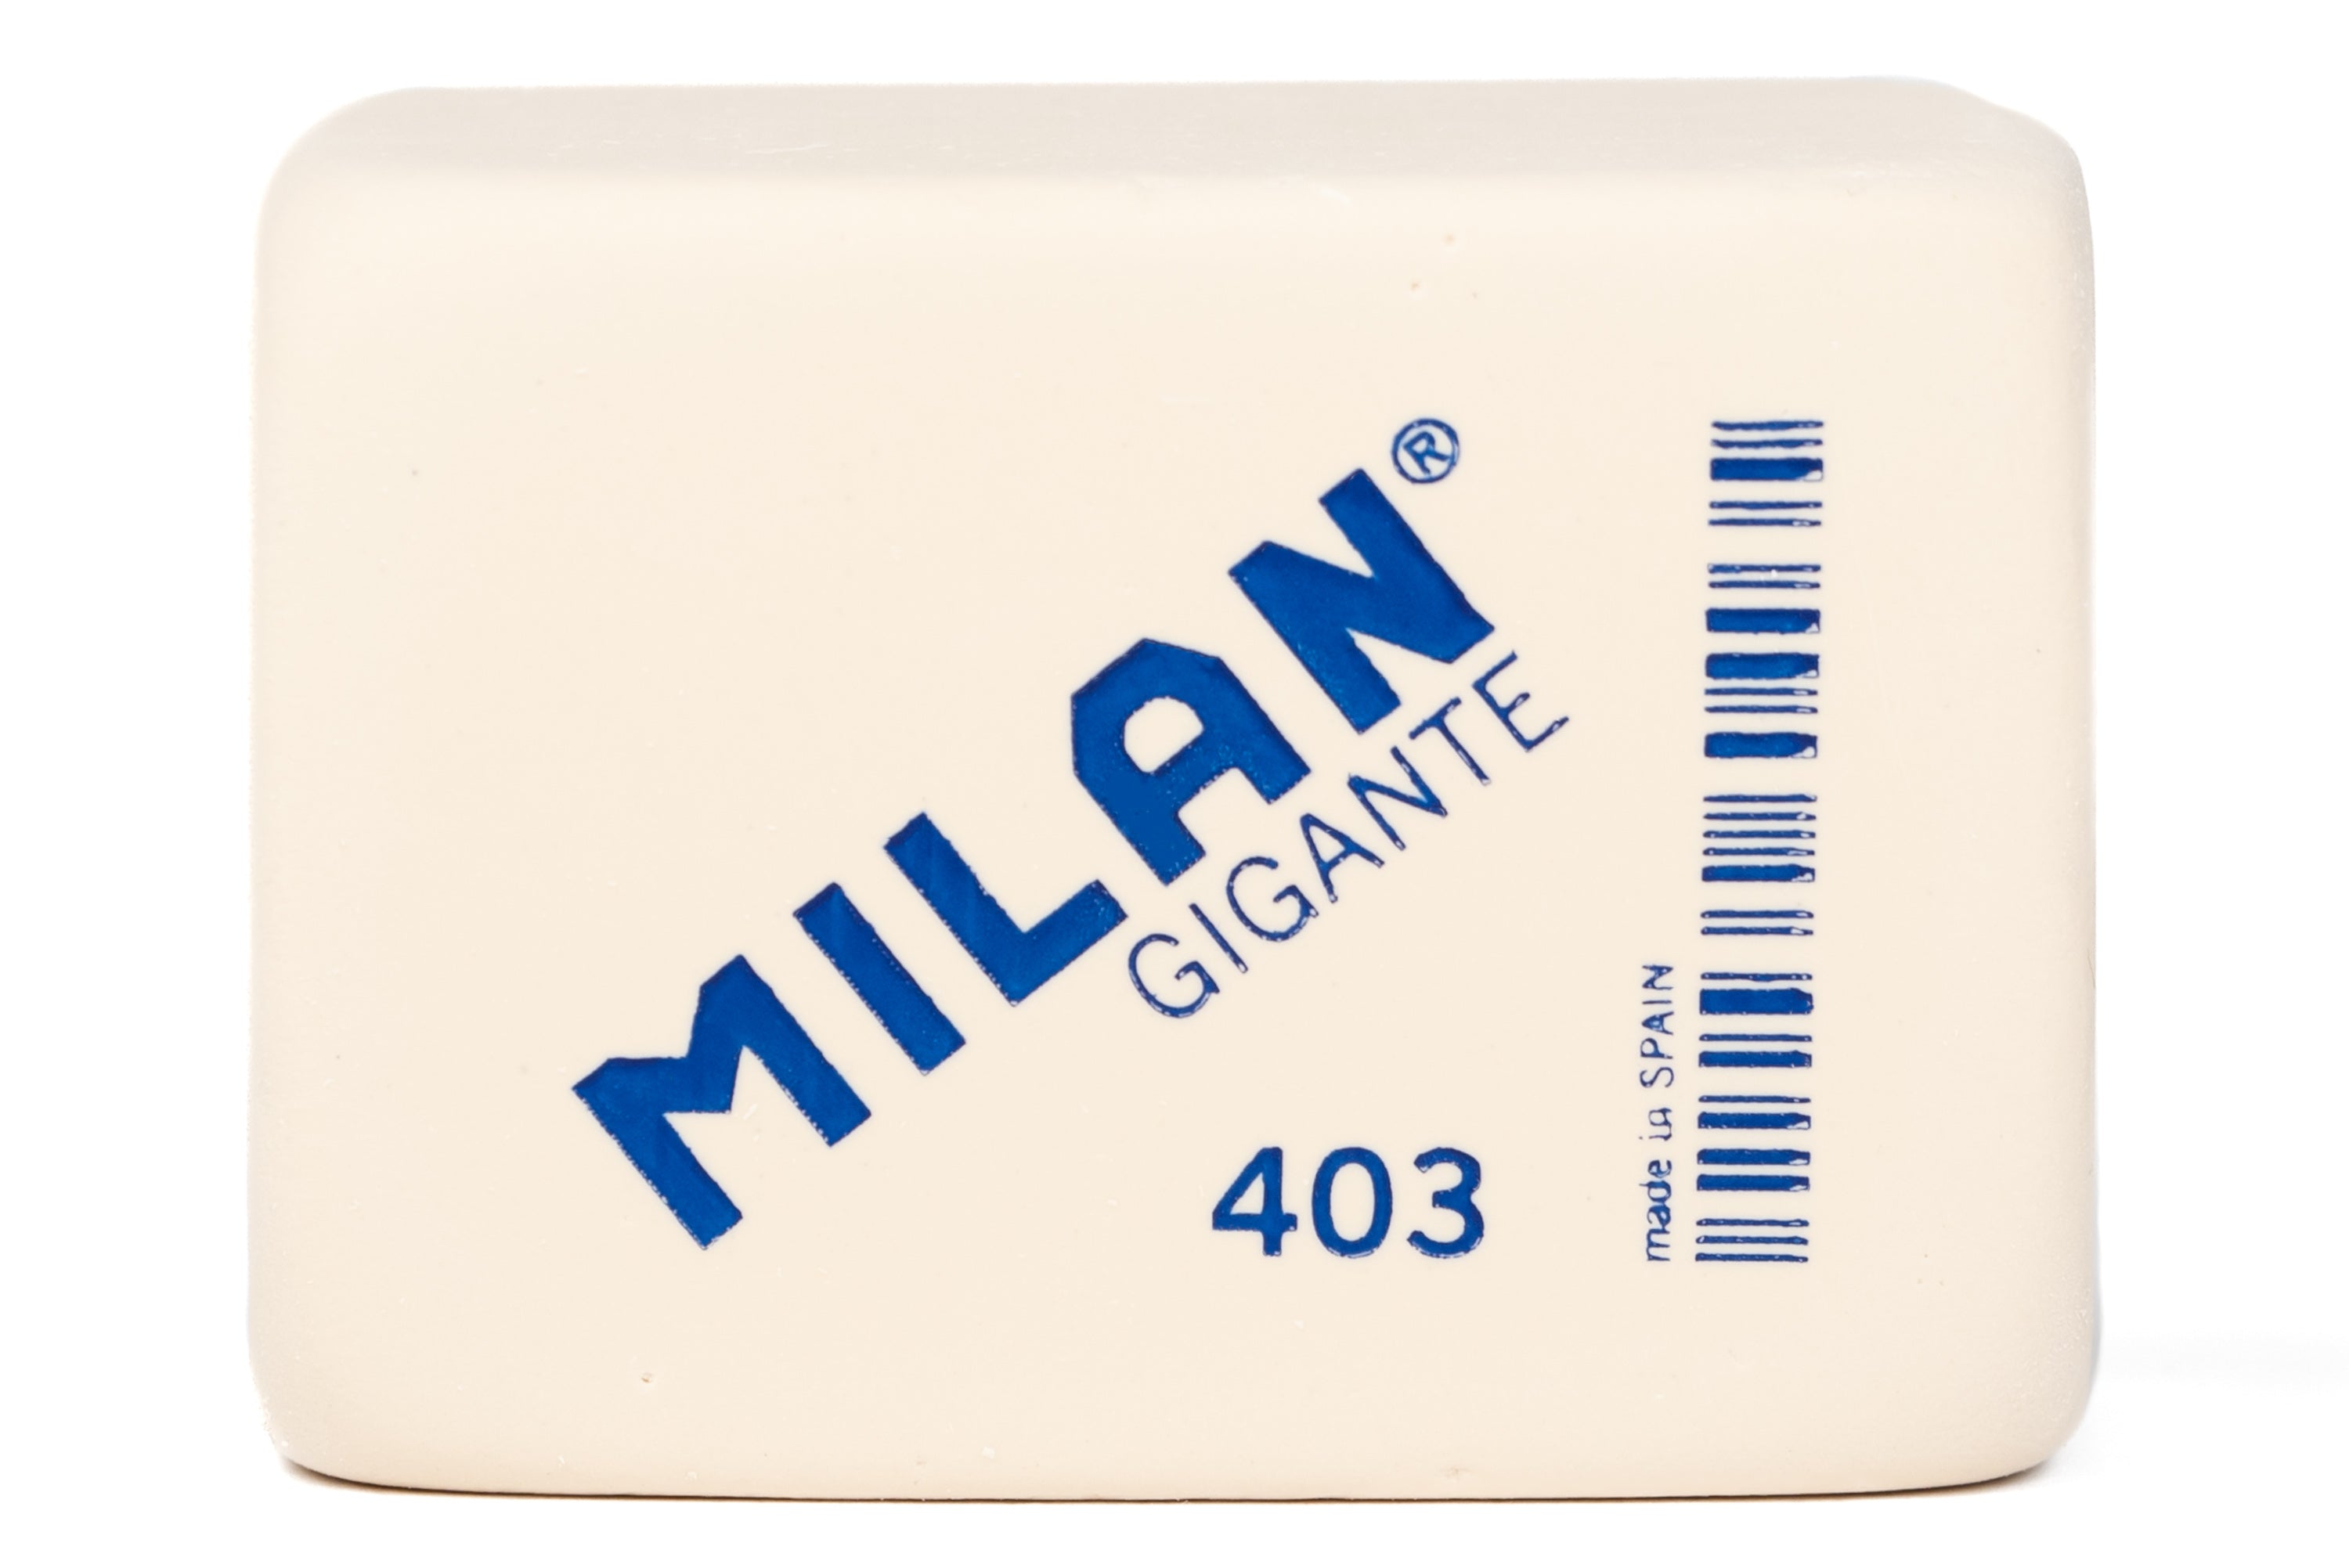 Milan Master Gum 1420 Eraser